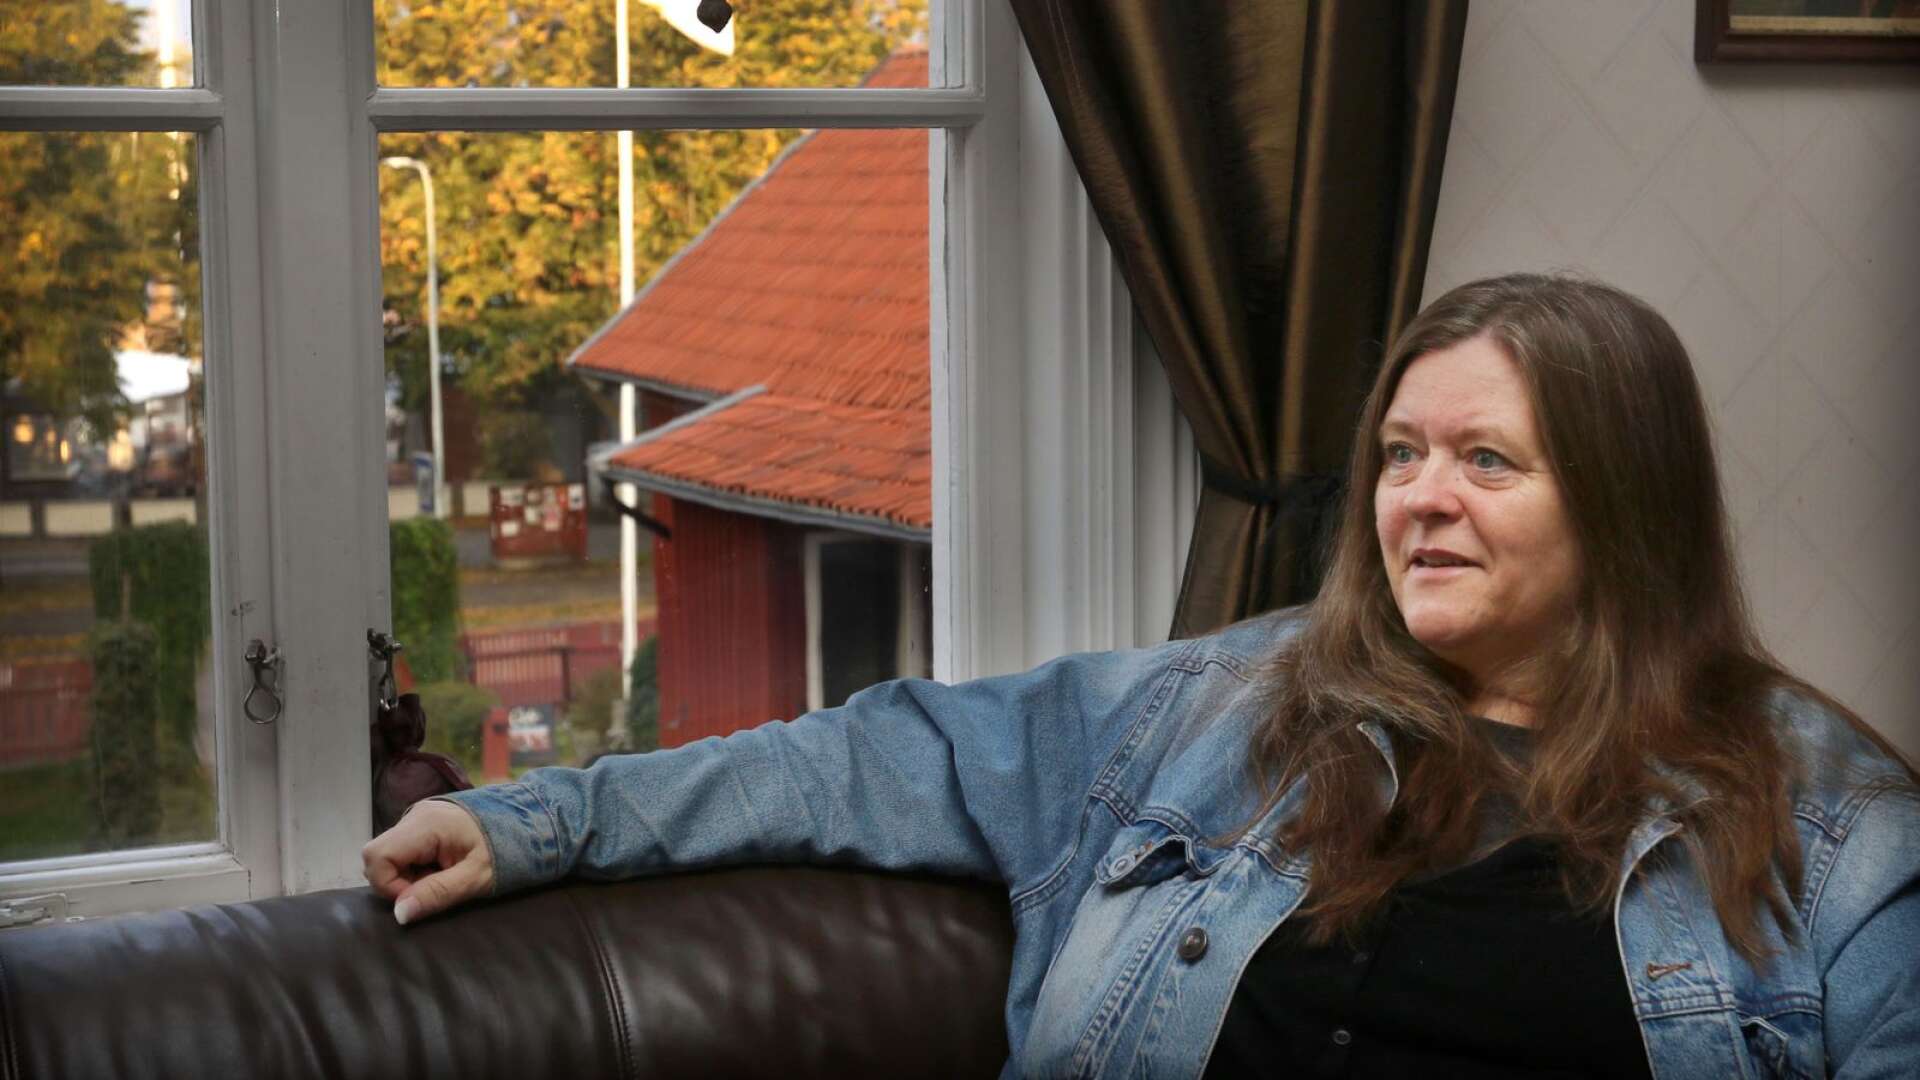 Lotte Dalgaard är tillbaka i Mariestad efter 28 år. Då arbetade hon som journalist och bevakade häktningen av en dansk man misstänkt för Helena Anderssons försvinnande. Nu är hon här för att göra research inför en bok om kriminalfallet.